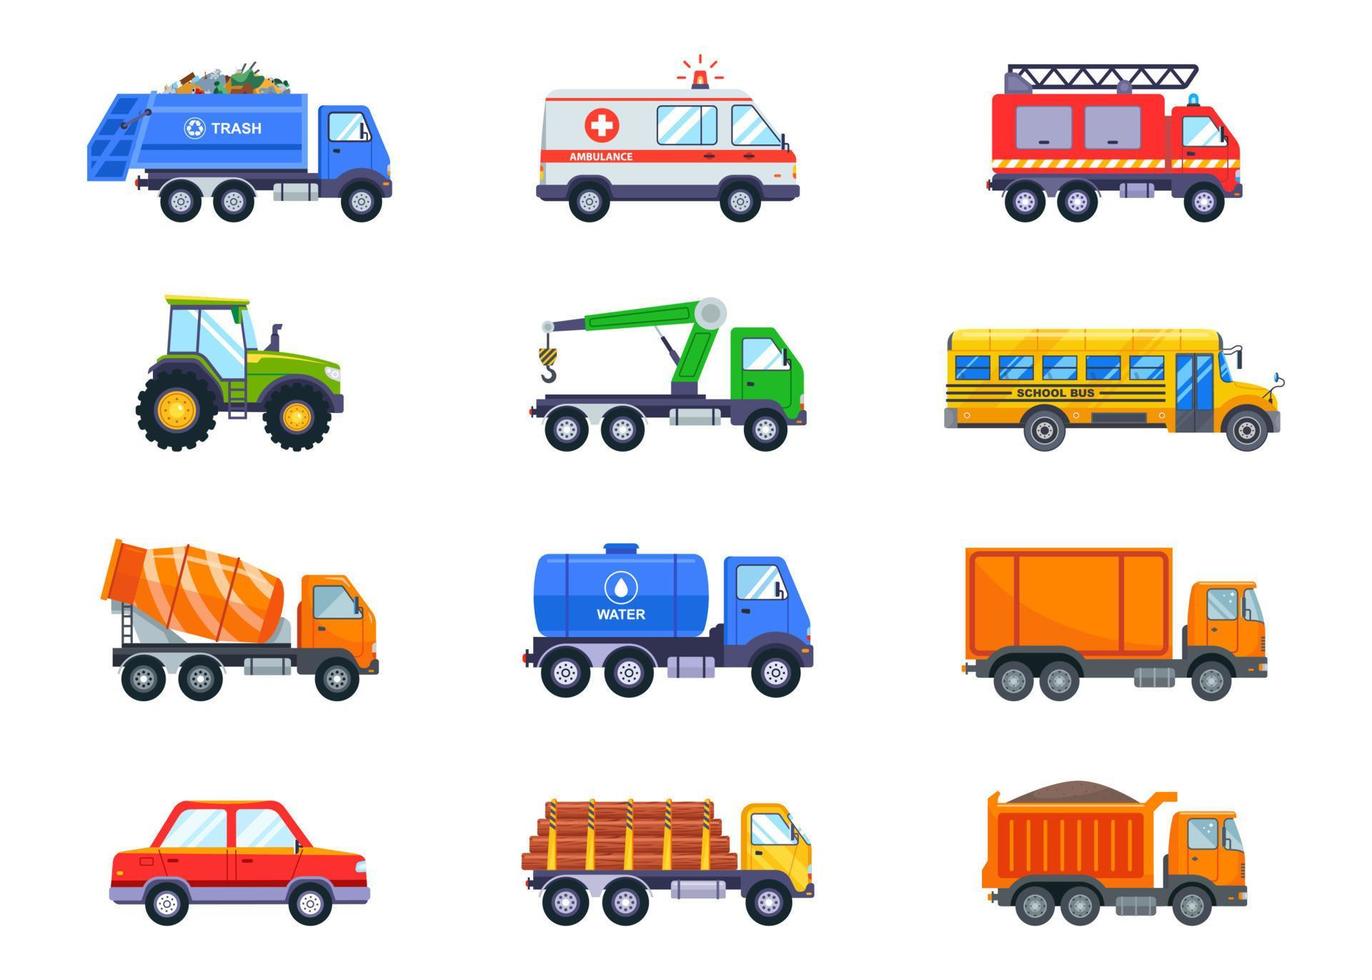 impostato con il trasporto pubblico e merci. taxi, camion della spazzatura, ambulanza, trattore, furgone, ambulanza, furgone e betoniera su sfondo bianco. illustrazione vettoriale. vettore